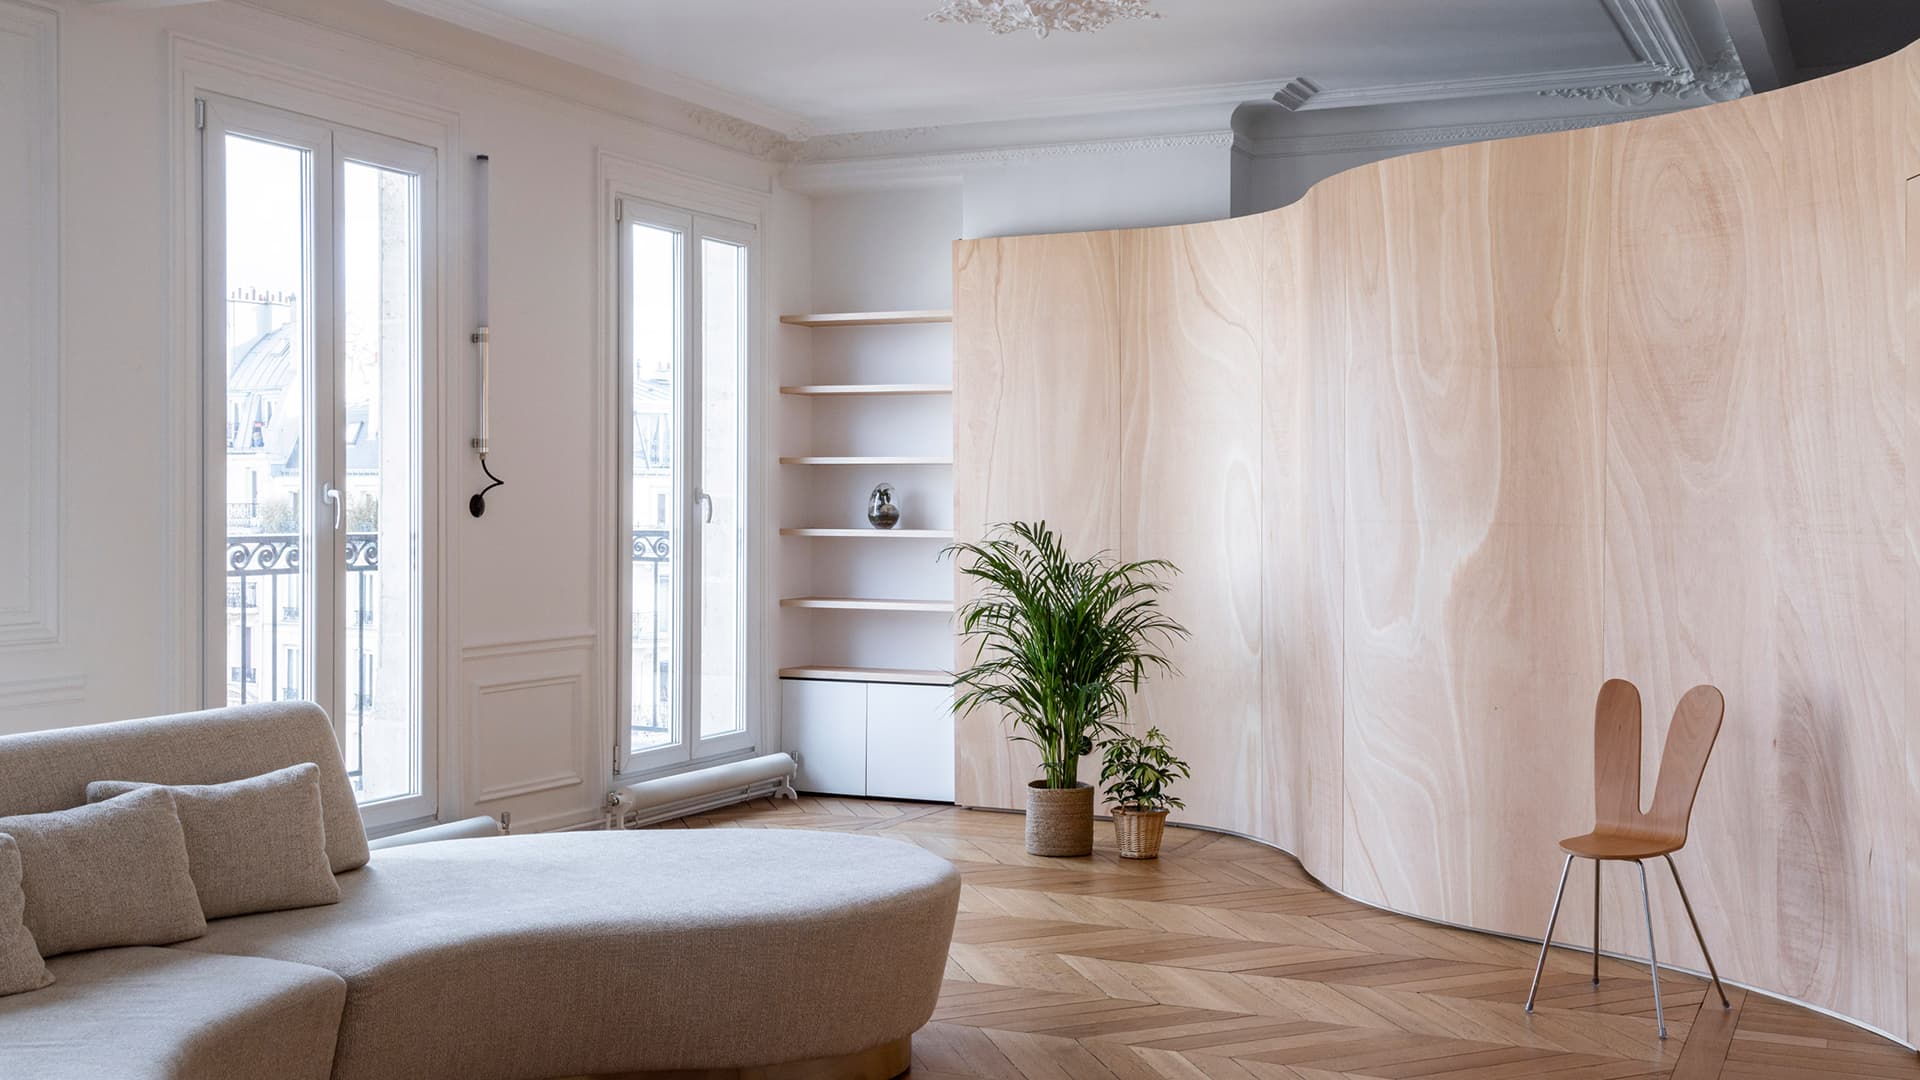 Ширма из фанеры в парижской квартире с лепниной — проект Toledano+Architects